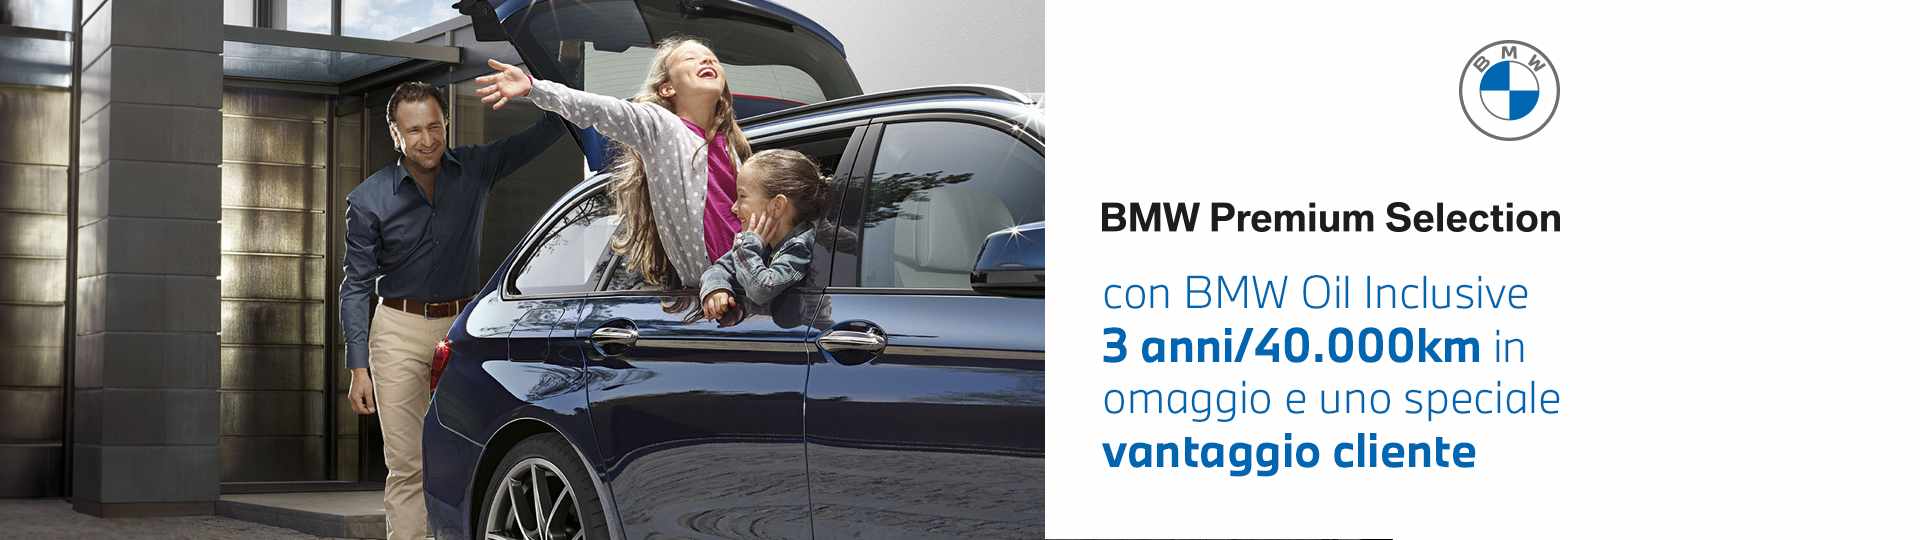 Header_BMW-OIL.jpg